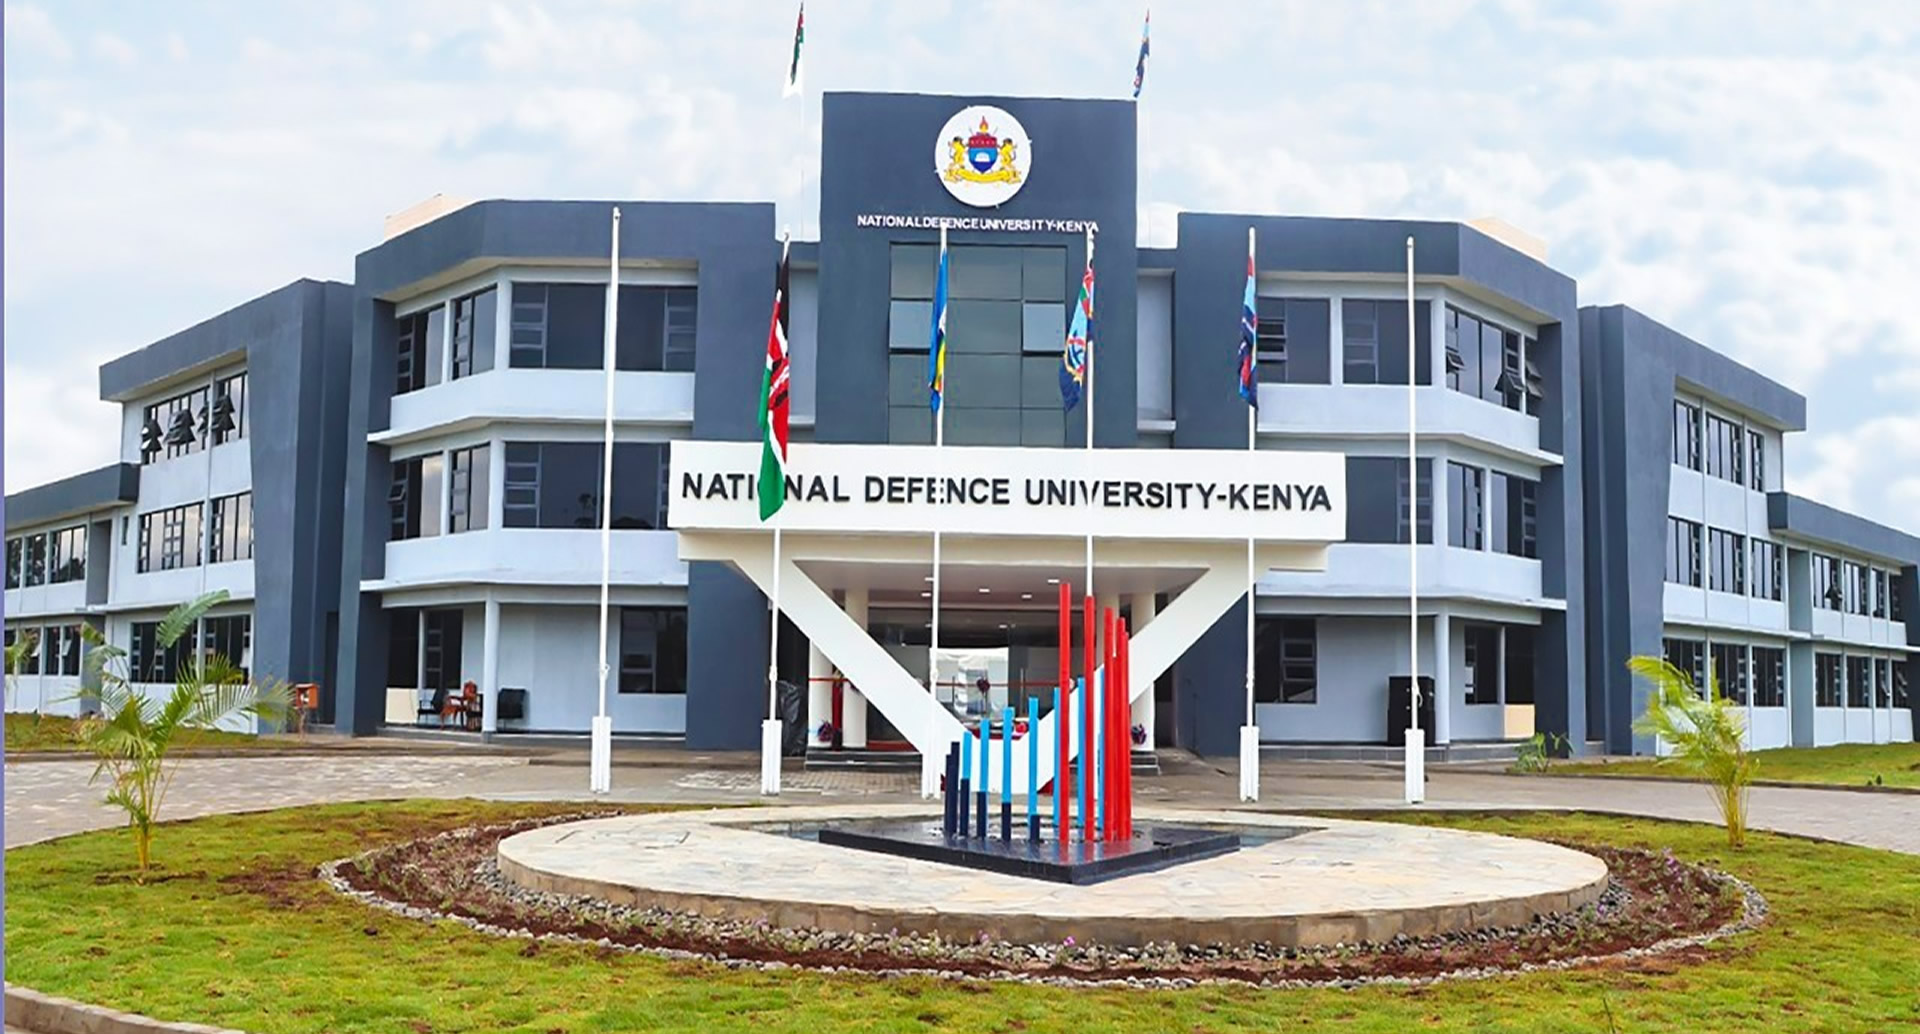 National Defence University-Kenya